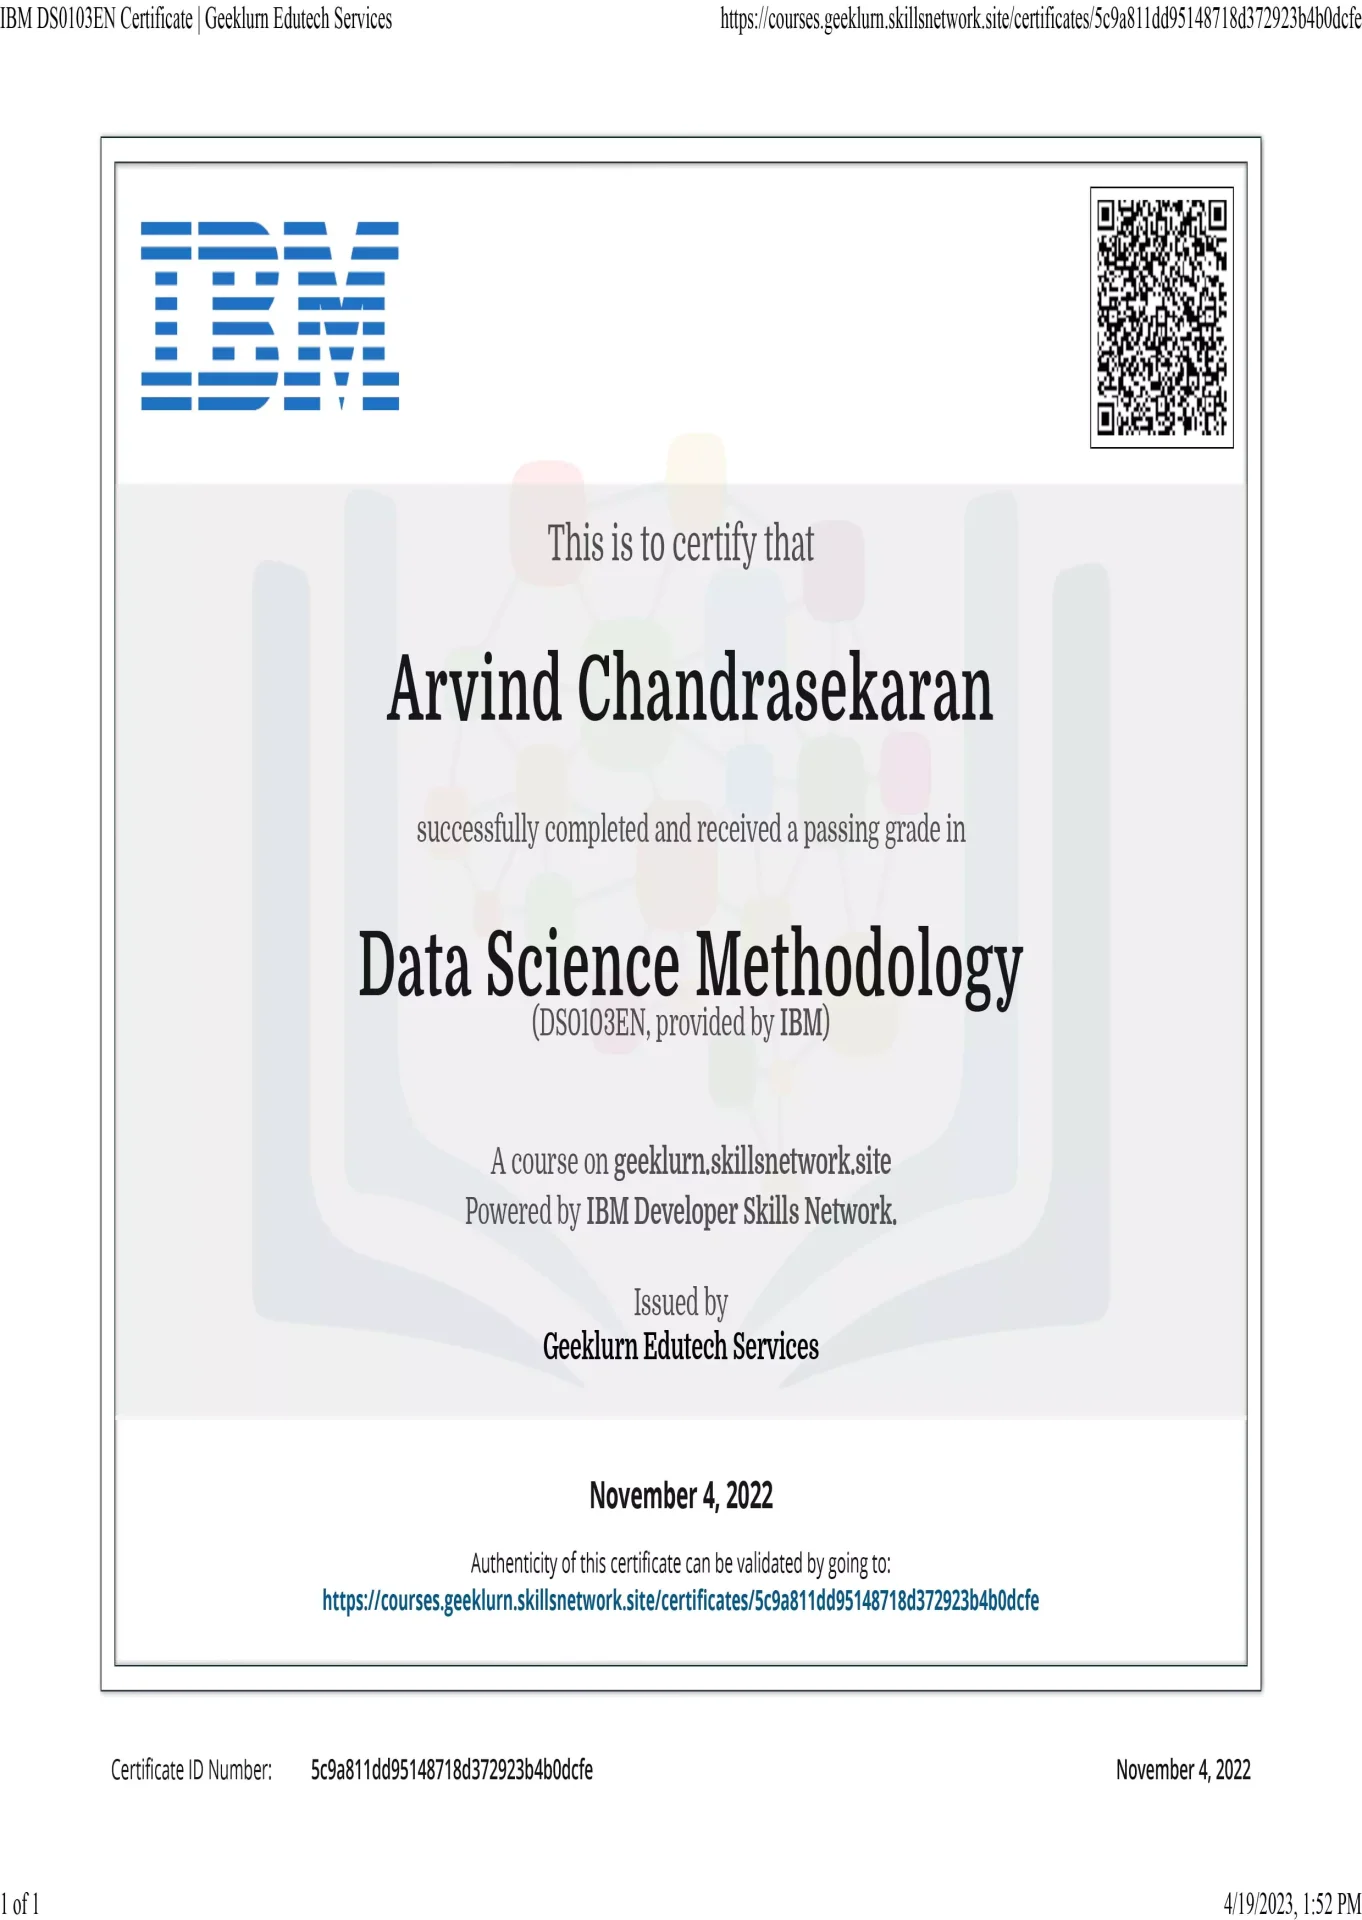 data-science-methodology-nov-4-2022